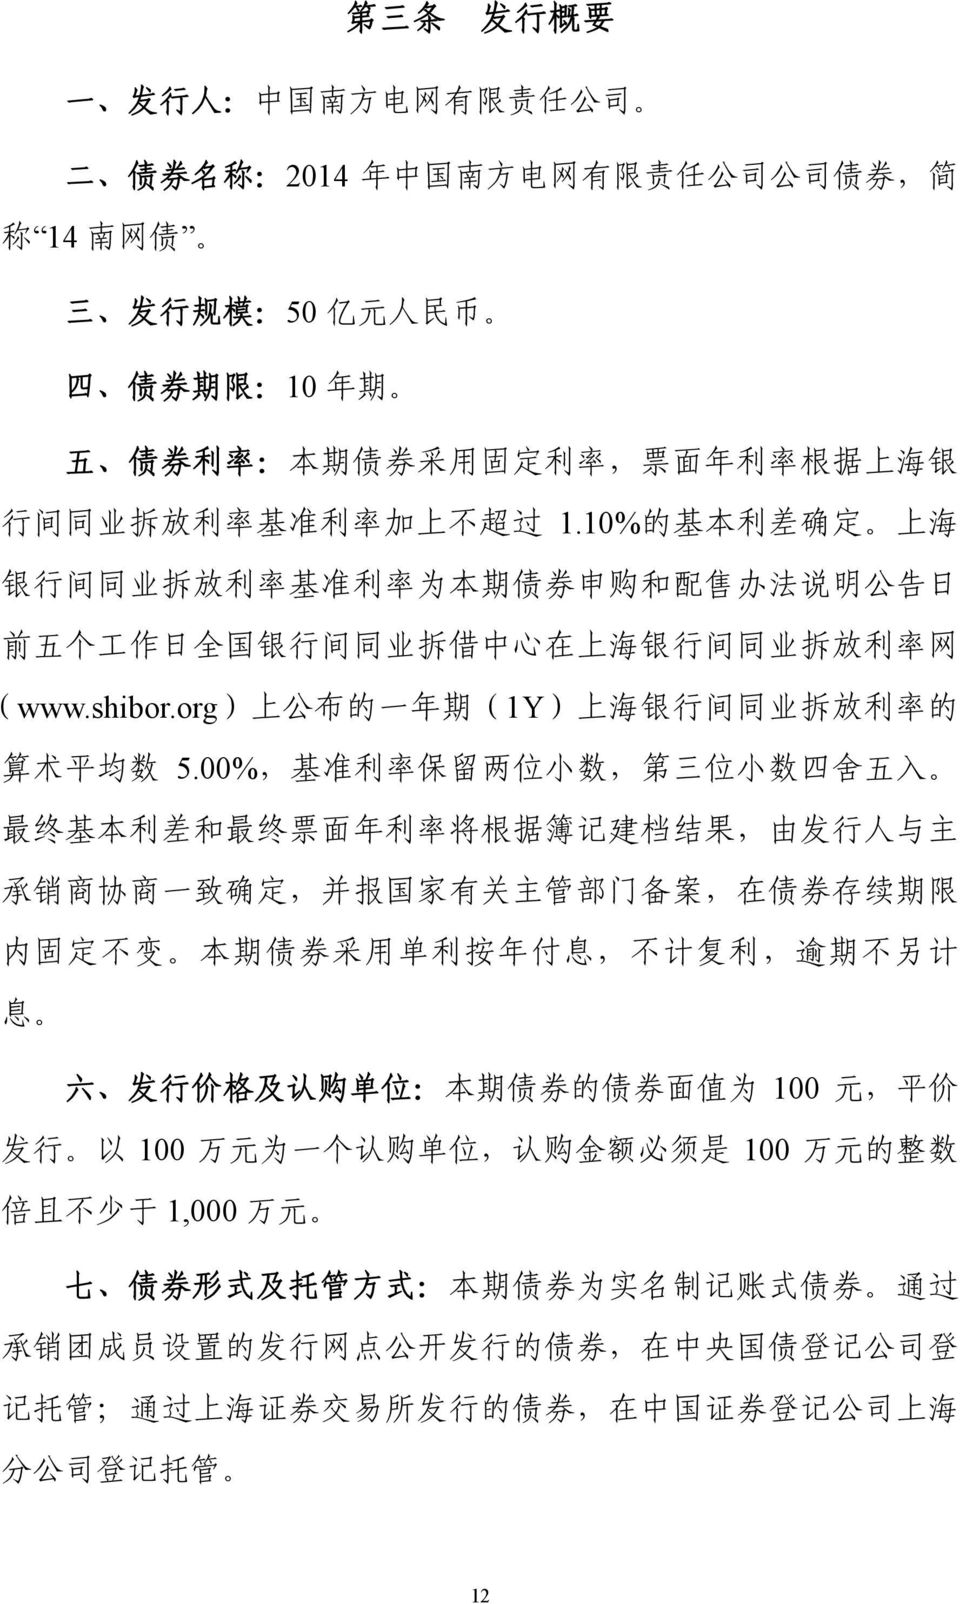 org) 上 公 布 的 一 年 期 (1Y) 上 海 银 行 间 同 业 拆 放 利 率 的 算 术 平 均 数 5.